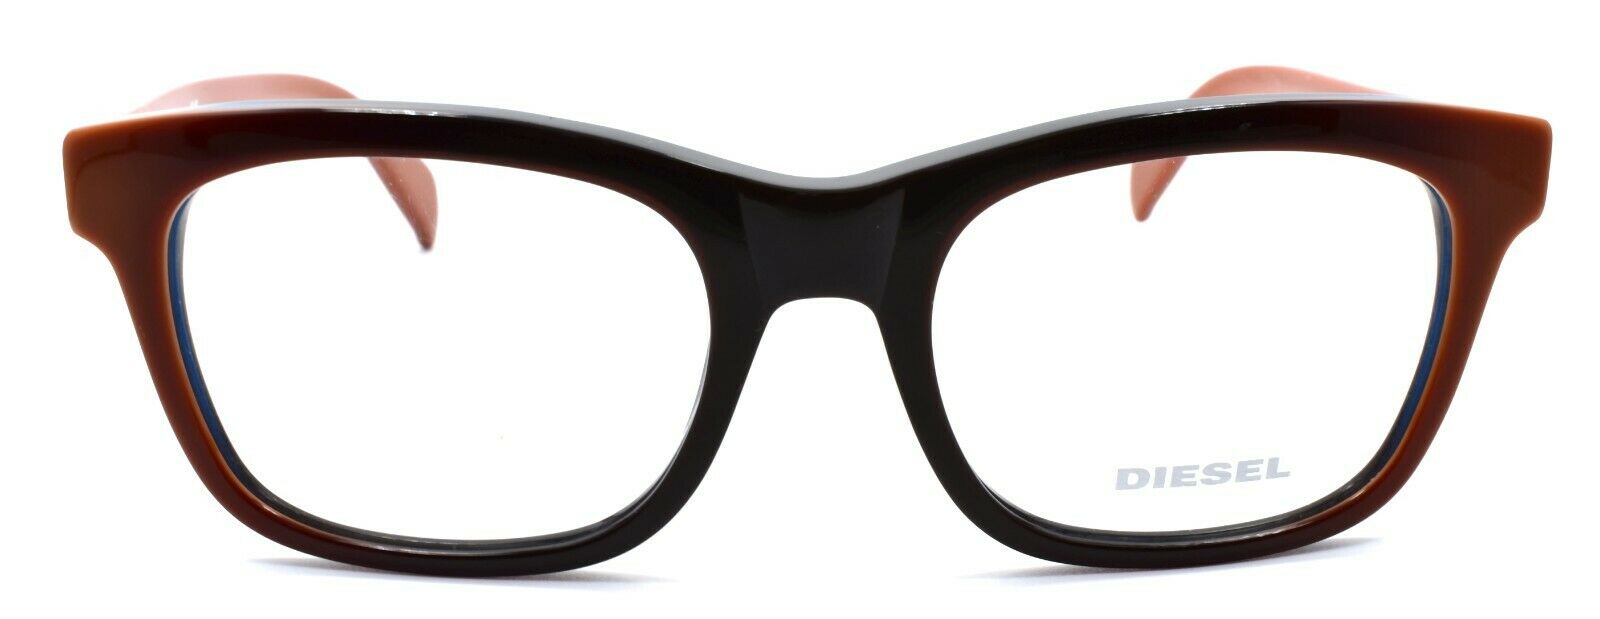 2-Diesel DL5079 050 Unisex Eyeglasses Frames 53-19-145 Brown Gradient-664689614110-IKSpecs